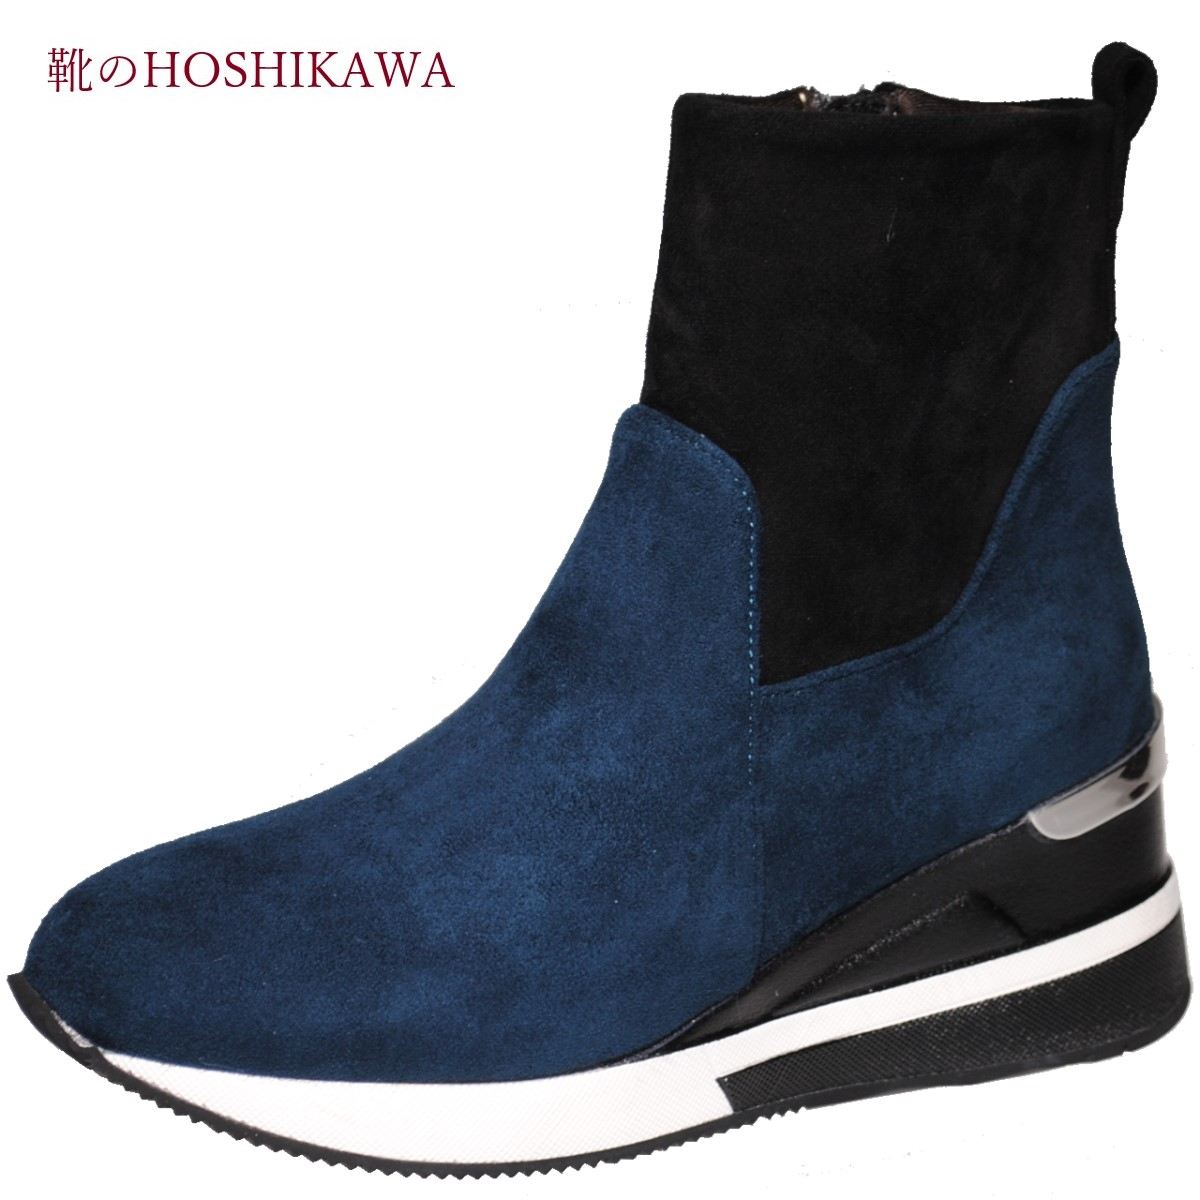 【靴のHOSHIKAWA】 『maaRu 600』レディース ショートブーツS M L LL ネイビー内側ファスナー 厚底合皮 スウェード 秋冬